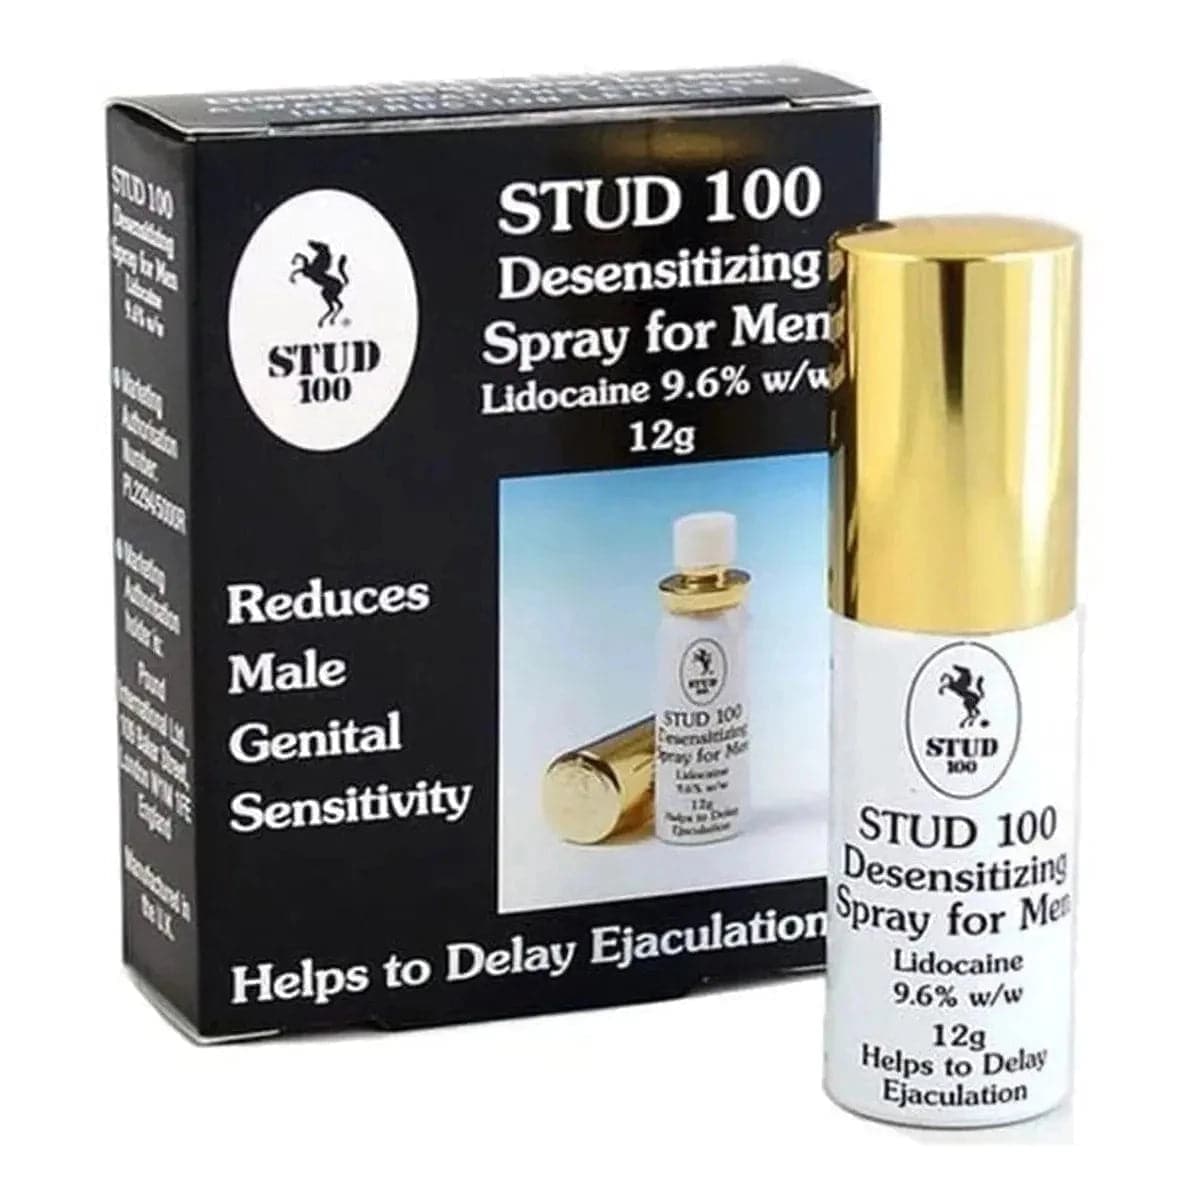 Spray Retardante Stud 100 ORIGINAL - Para Atrasar a Ejaculação Precoce - Pérola SexShop